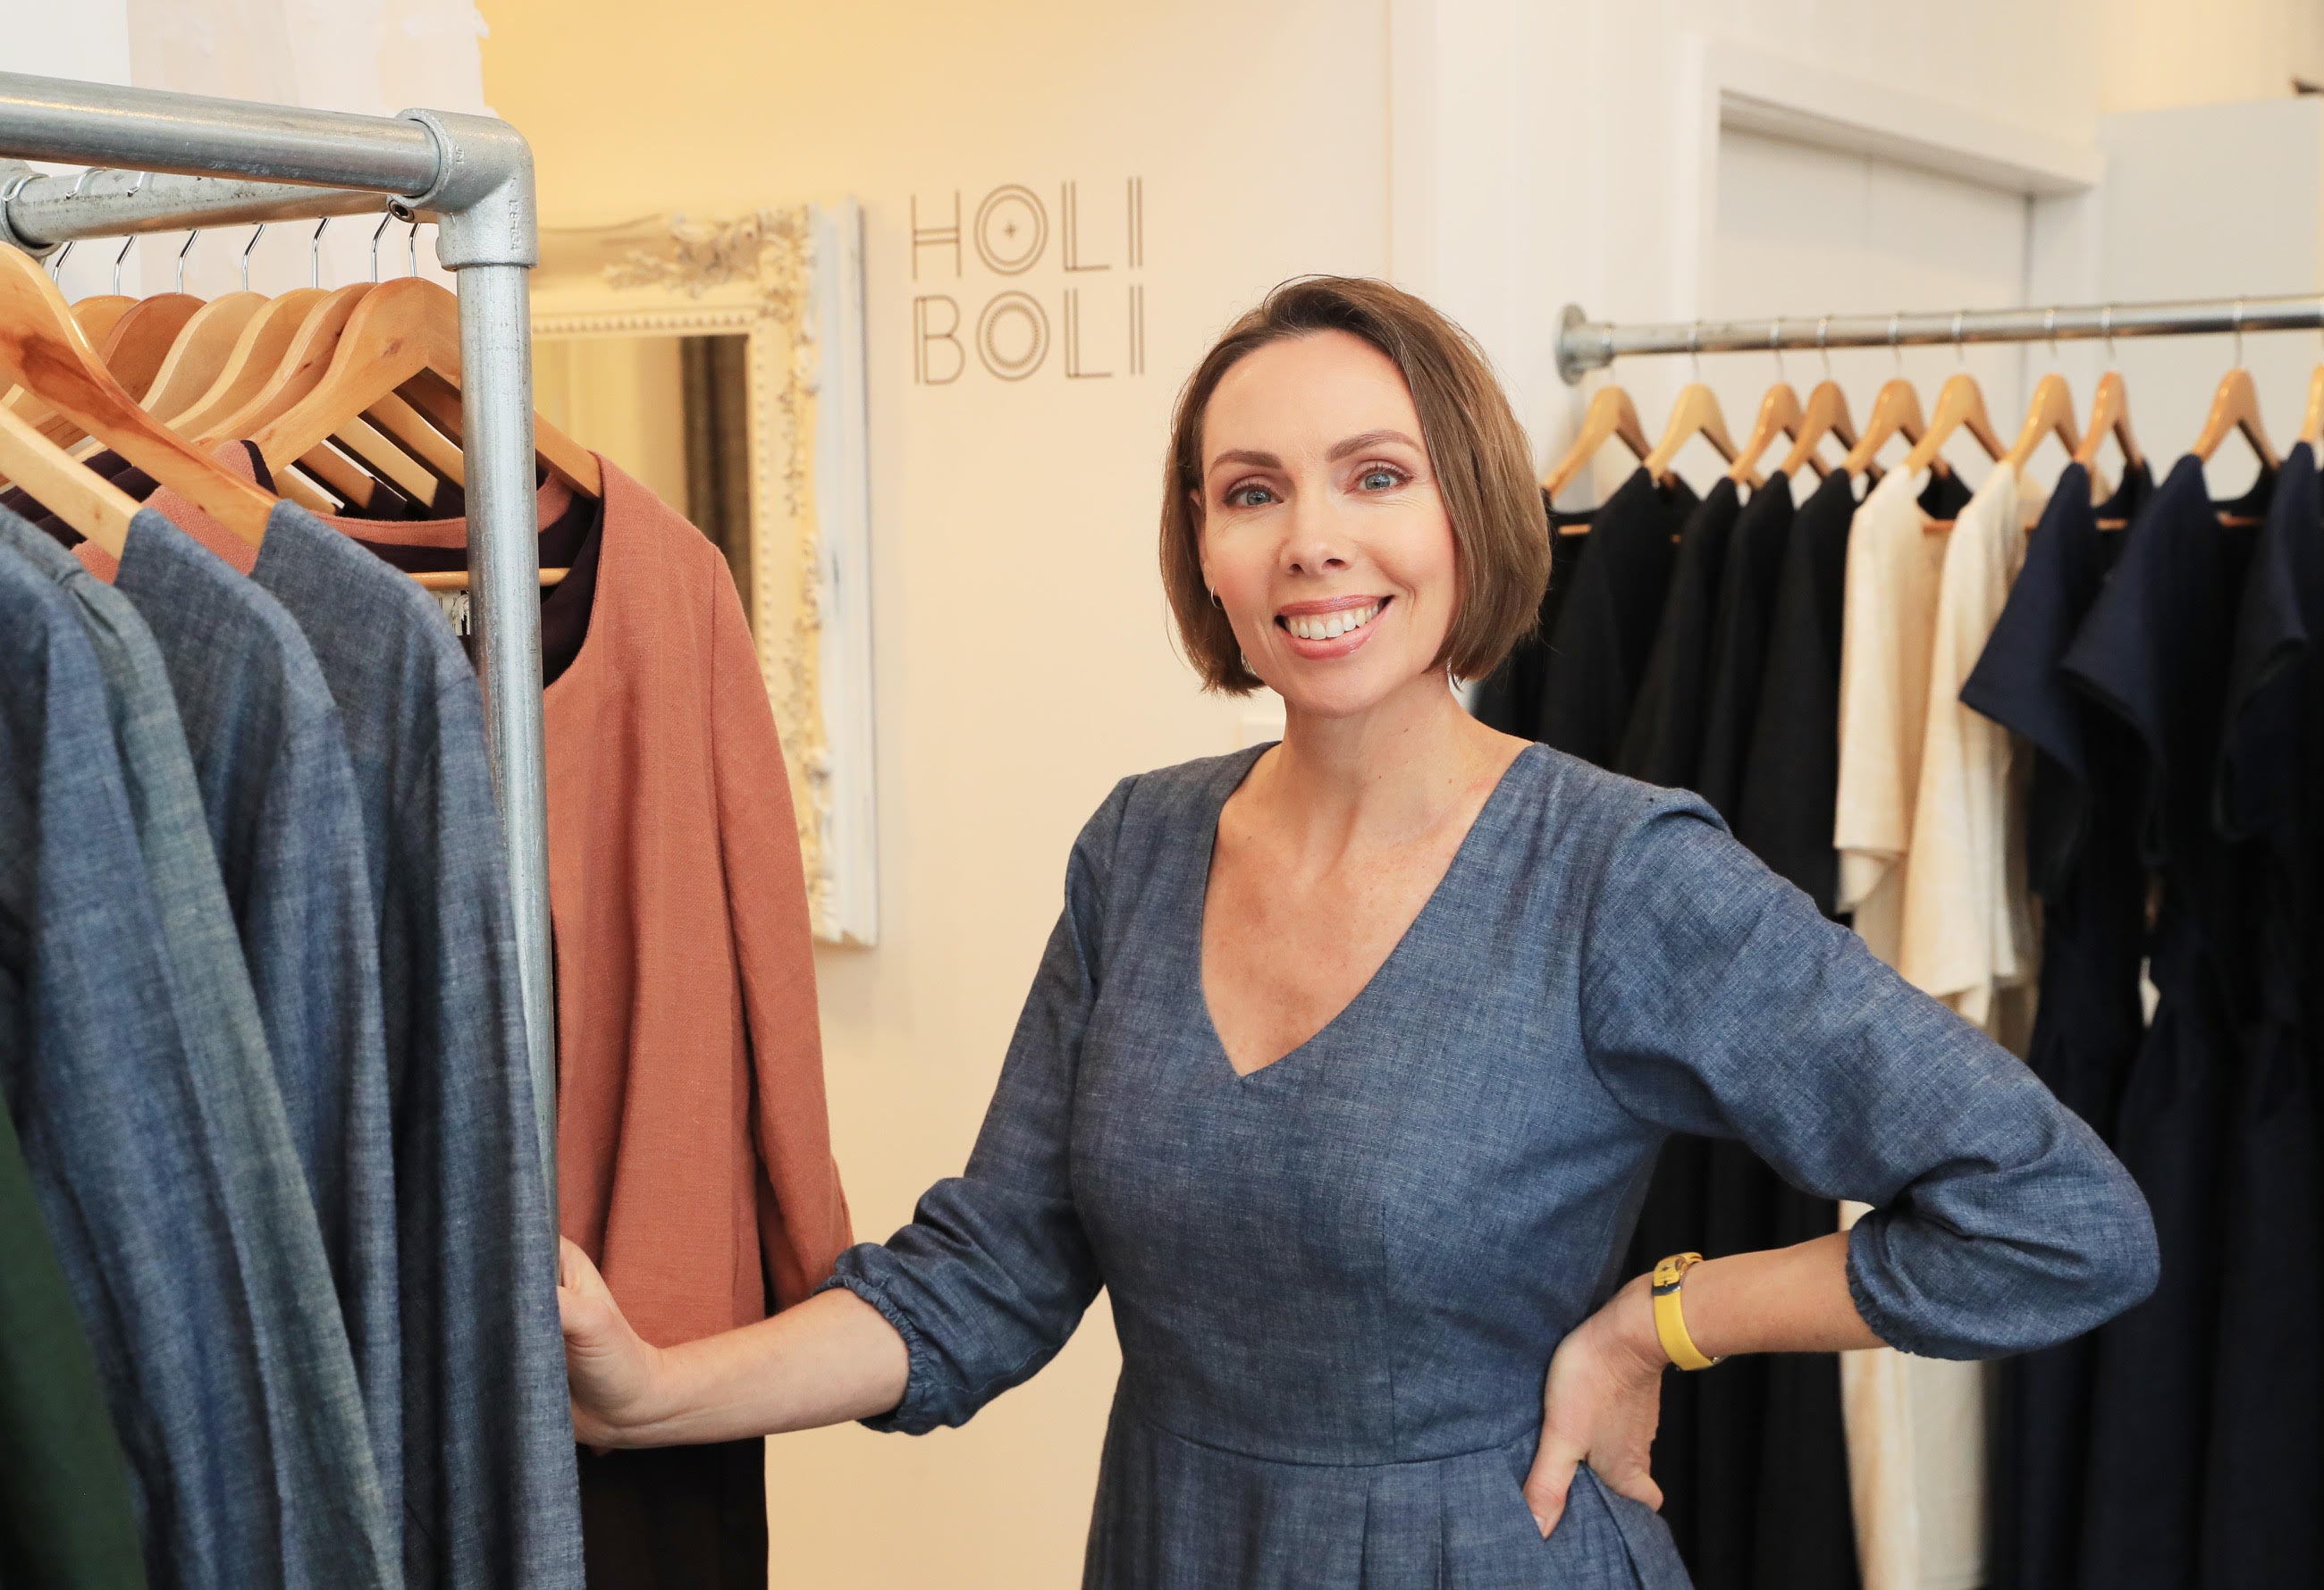 Dressy Sweatshirt  Shop Sustainable, Ethical Clothing for Women – Encircled